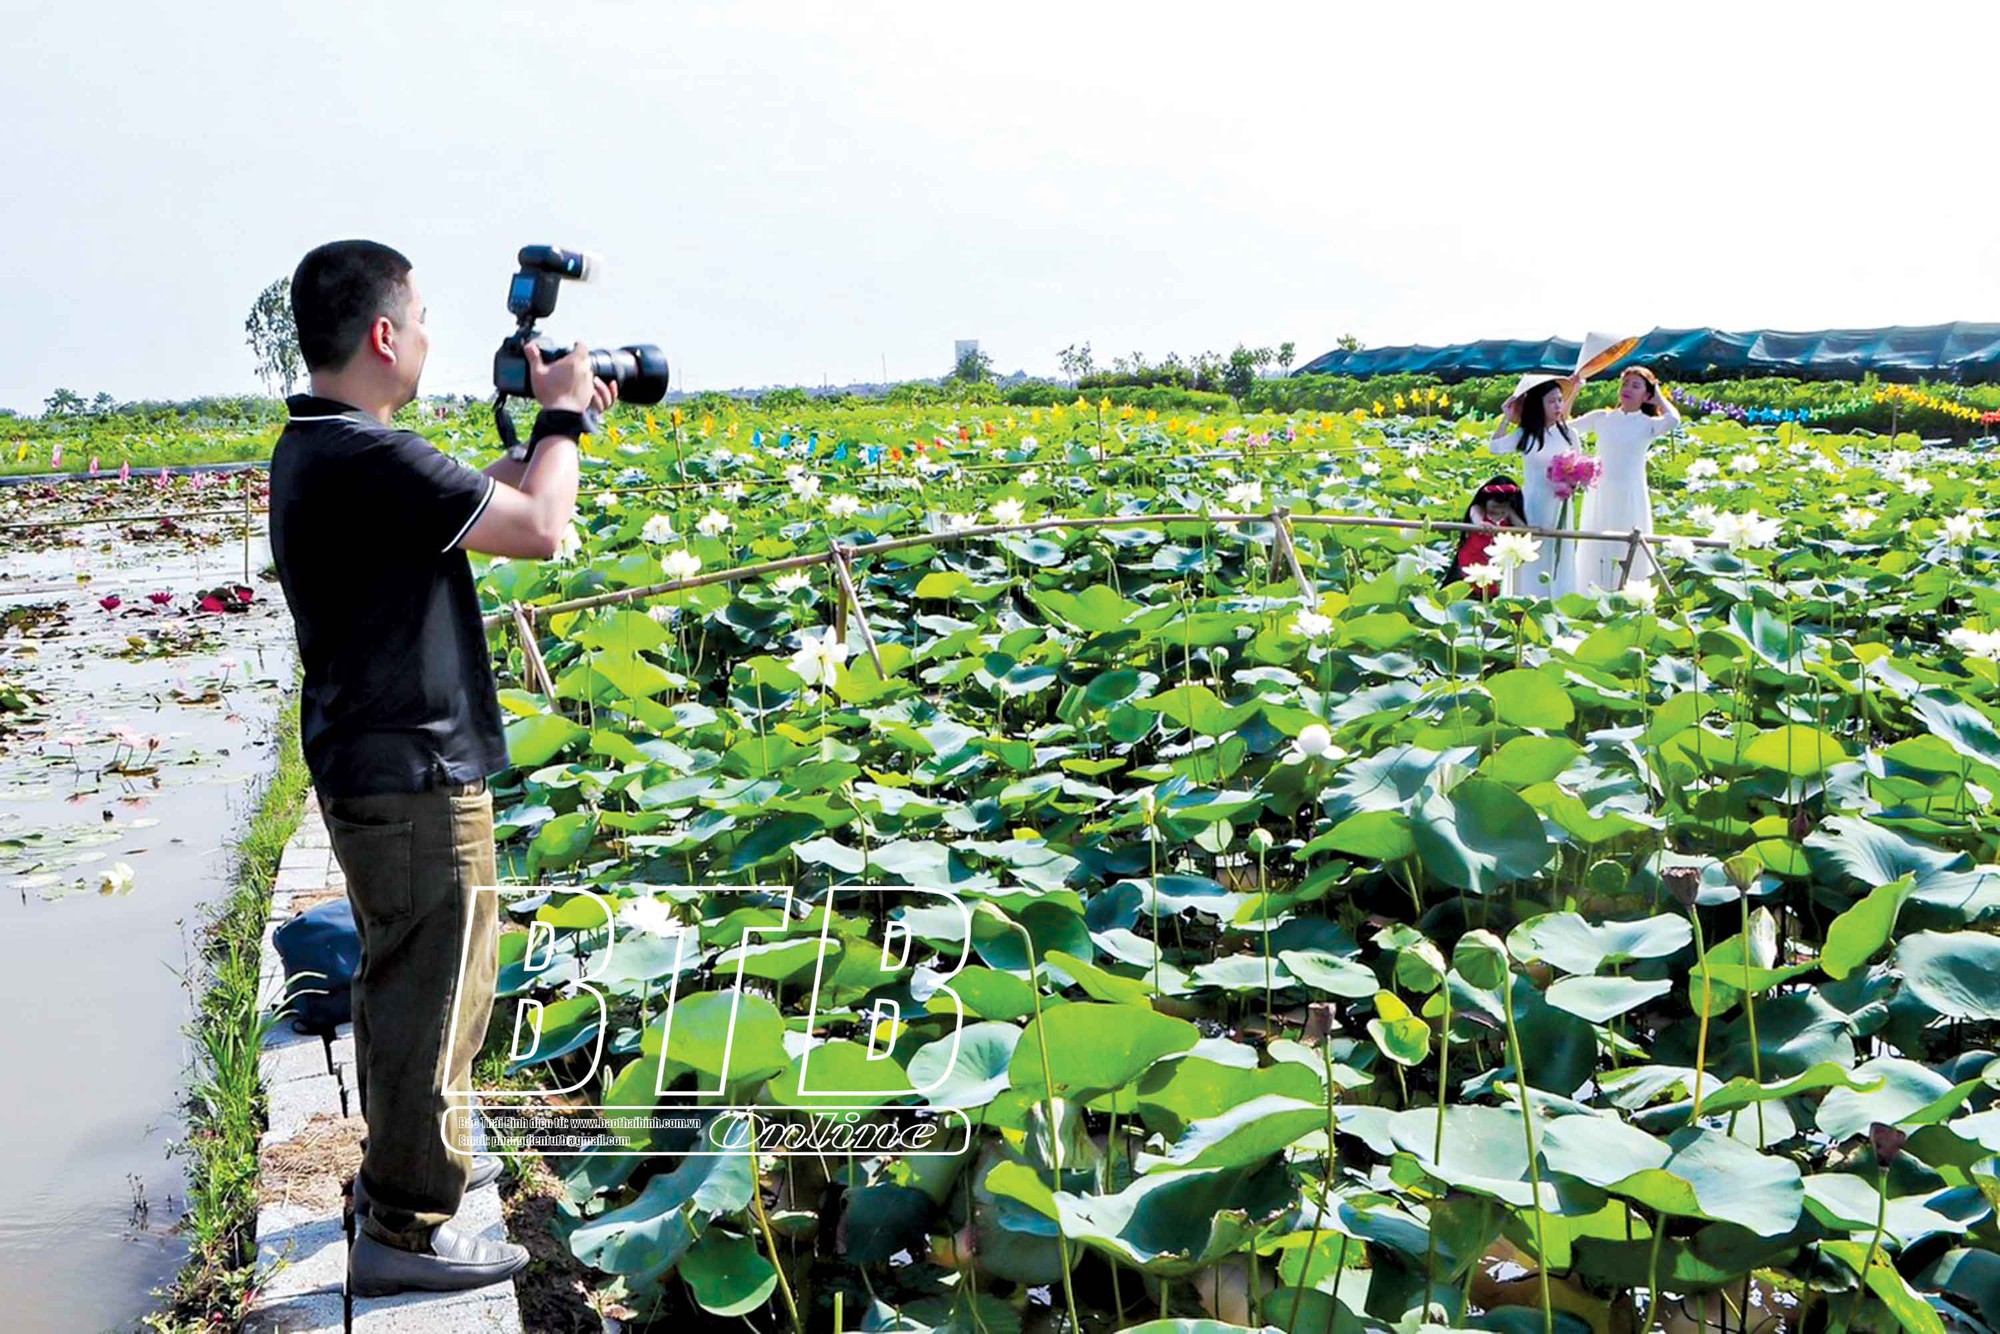 Vùng đất này của Thái Bình trồng loài hoa mùa hè, bán từ lá, hoa đến củ, còn thu hút mọi người về chụp ảnh - Ảnh 1.